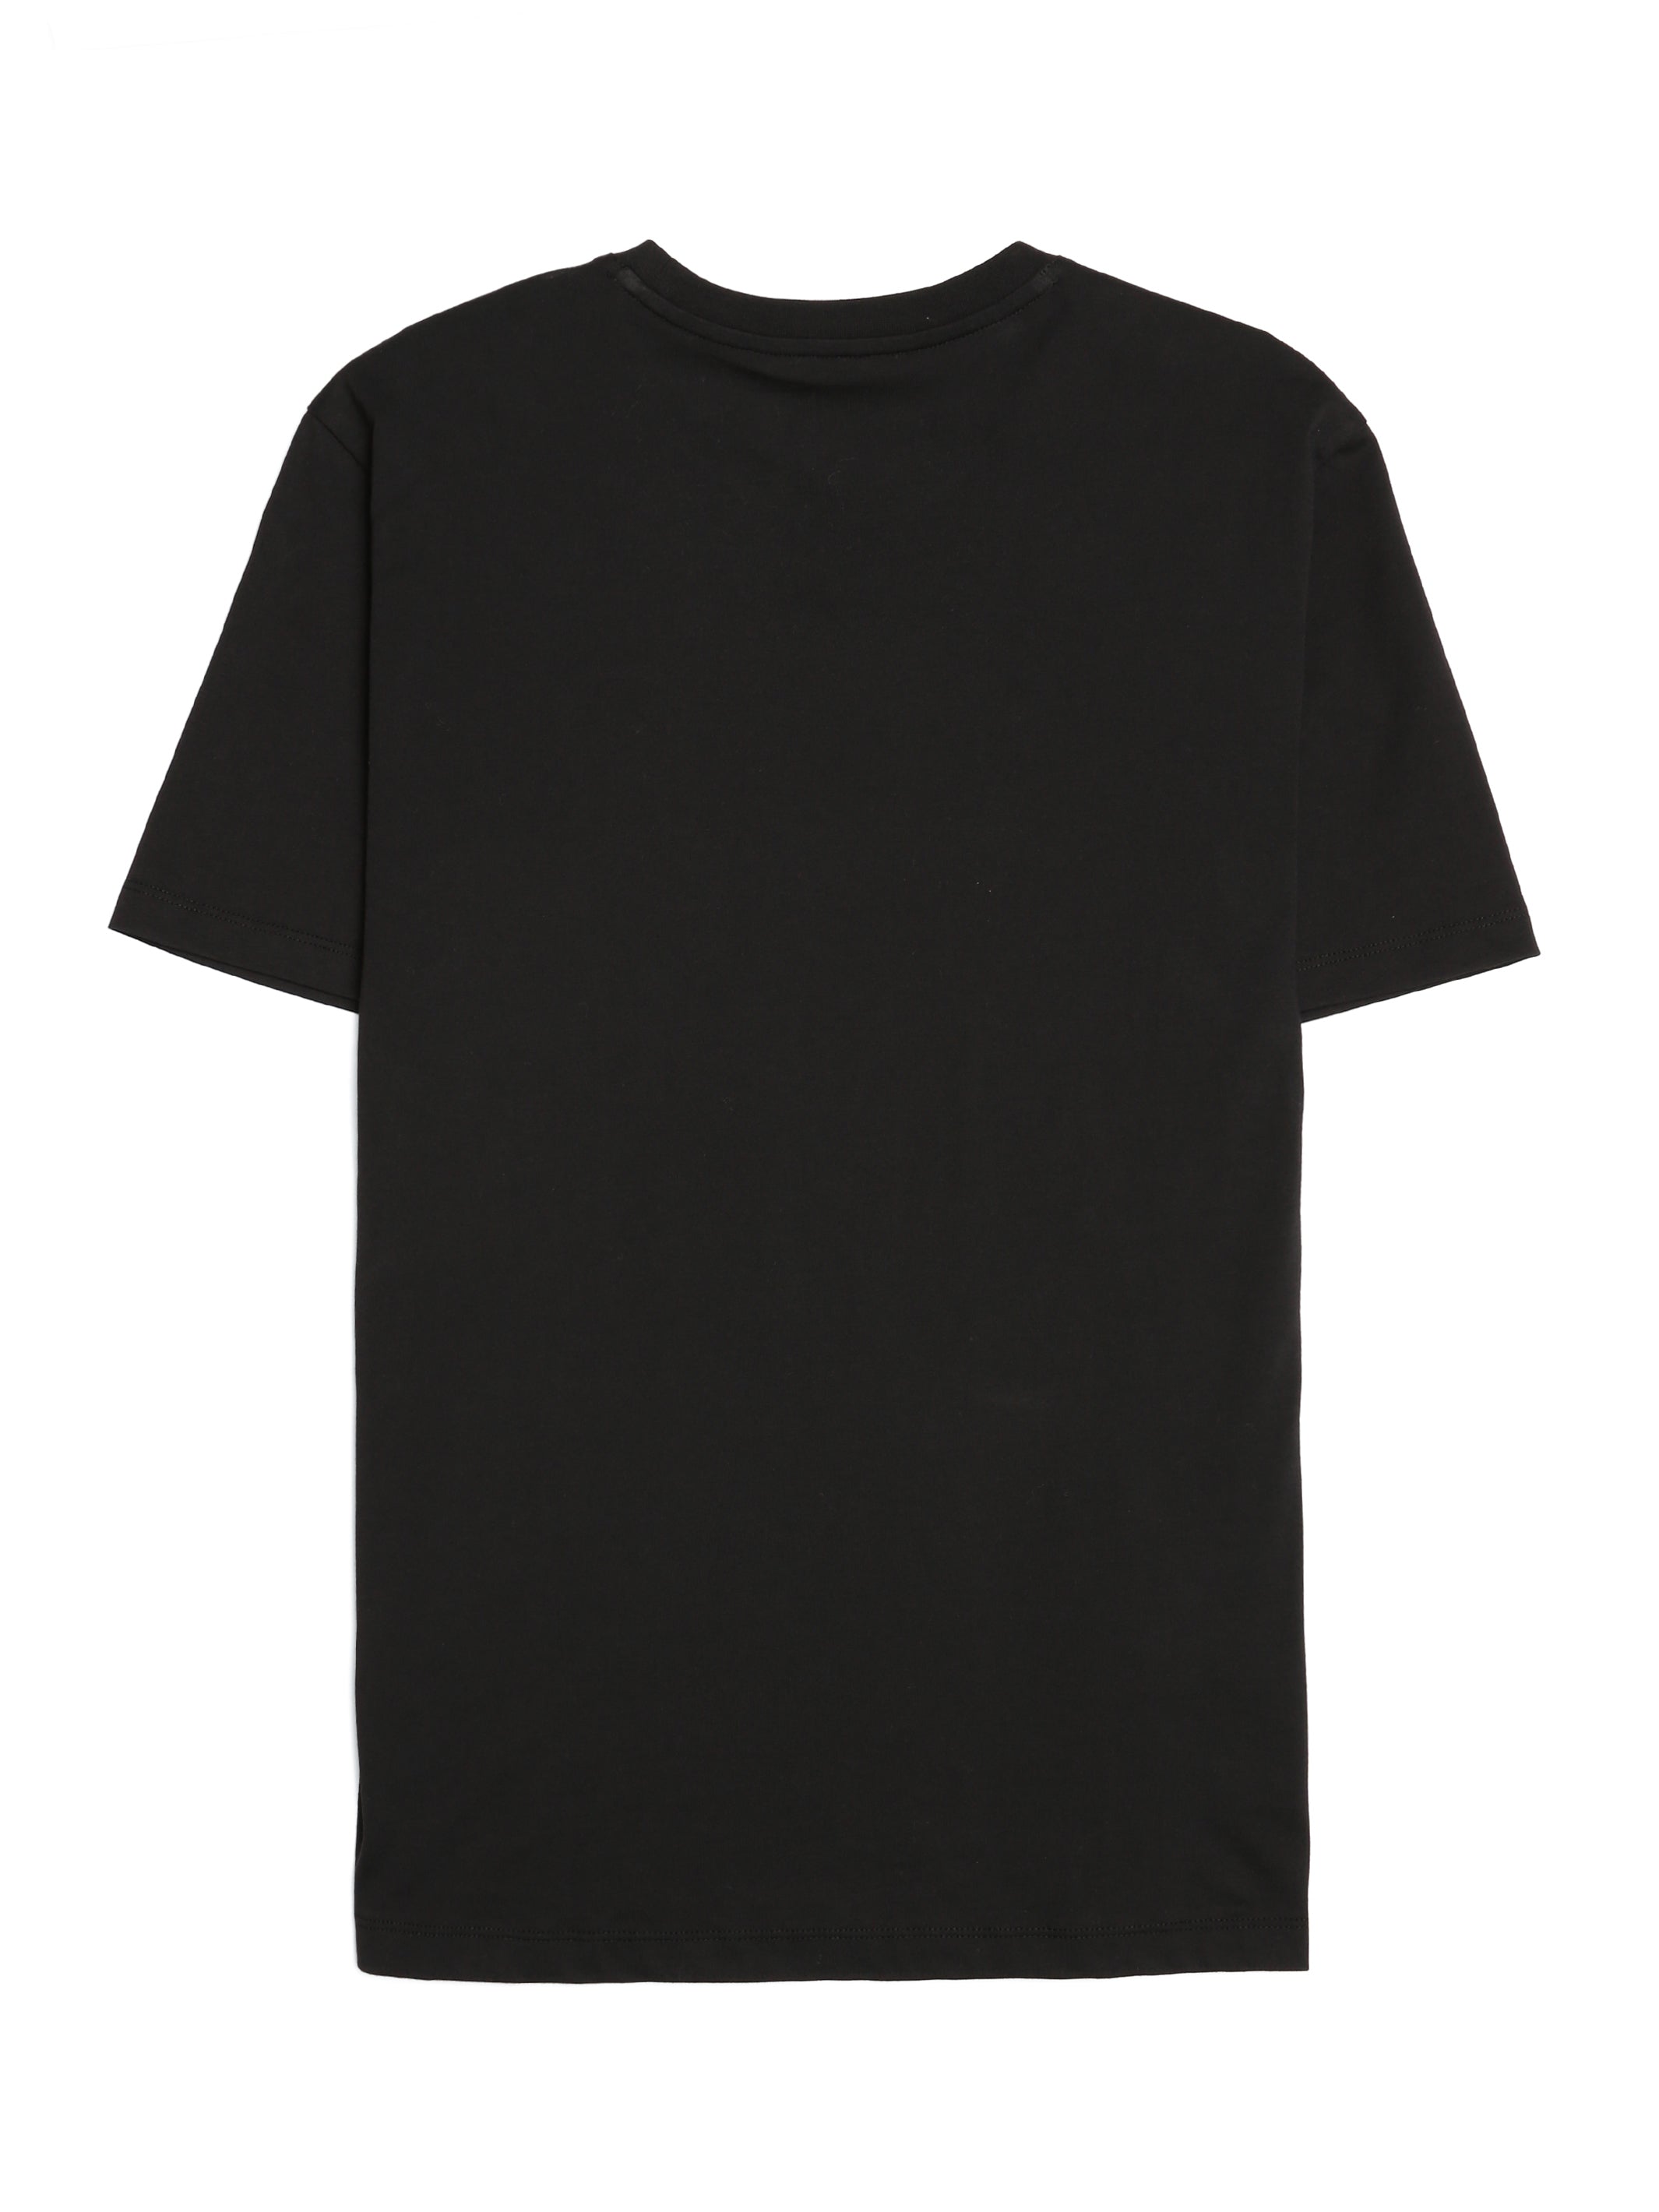 Men's Brooklyn Bridge T-shirt in Jet Black - BROOKLYN INDUSTRIES